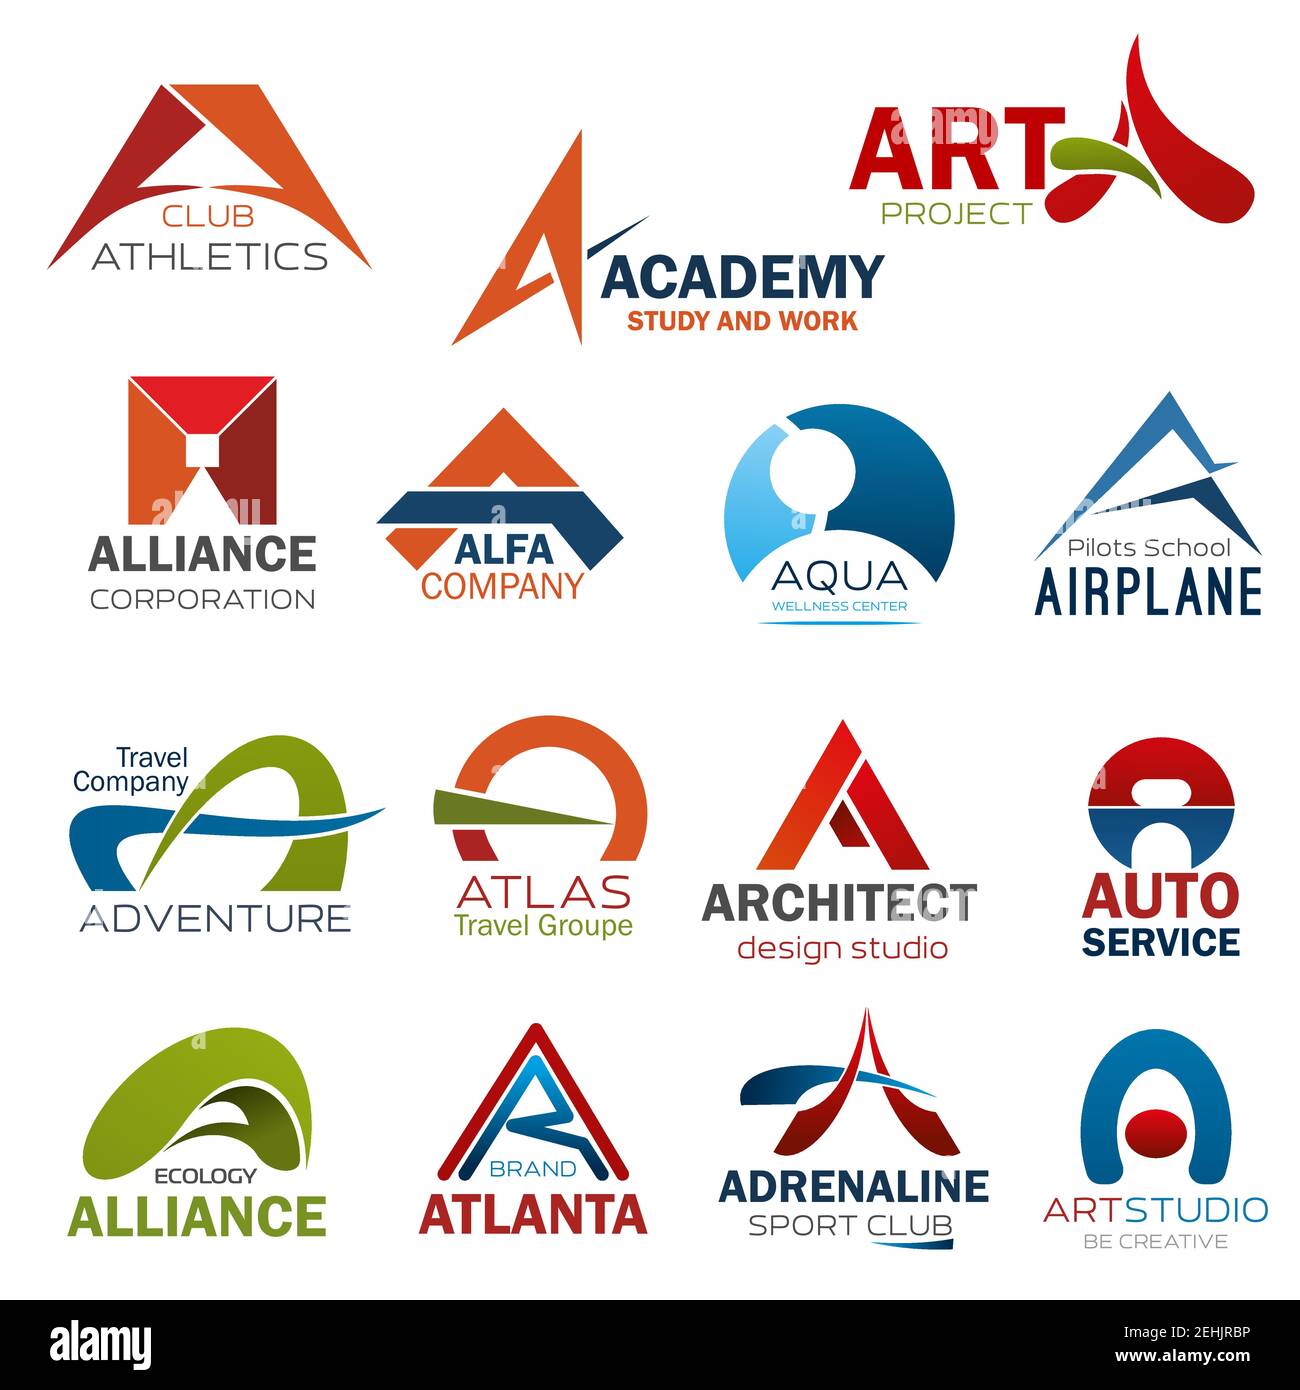 Schreiben SIE EIN Symbole für Corporate Identity von Art Design Studio, Leichtathletik-Fitnessstudio oder Studienakademie und Flugzeug Piloten Schule. Vektorsymbole für Reisen Stock Vektor